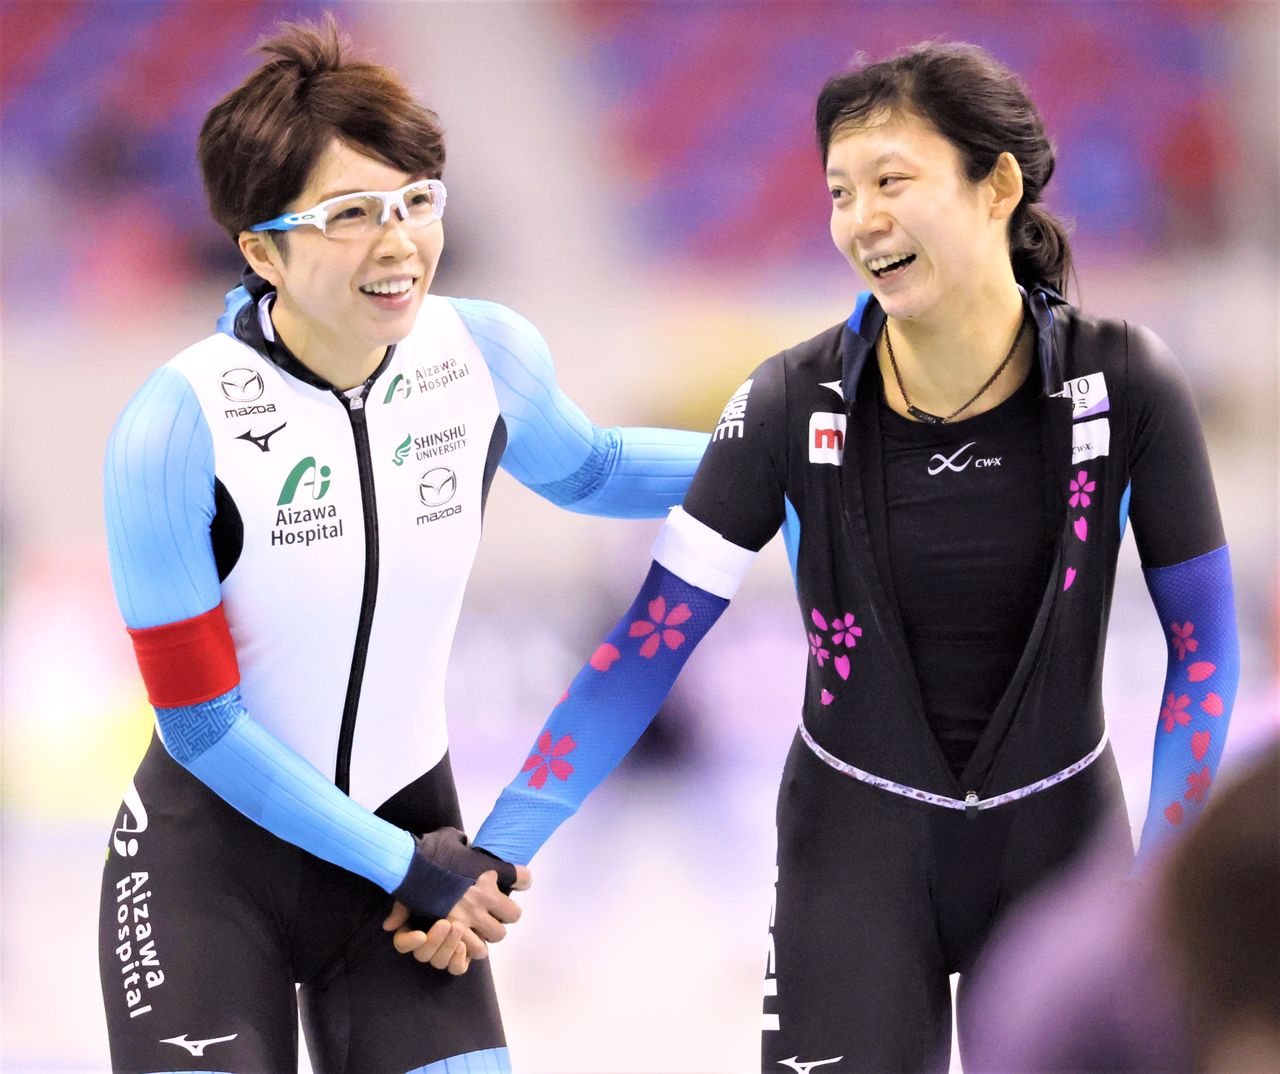 La ganadora Takagi Miho (derecha) felicita a la tercera clasificada, Kodaira Nao, después de los 1.500 metros en la ronda clasificatoria de patinaje de velocidad olímpico (31 de diciembre de 2021, M-Wave, Nagano, Japón)